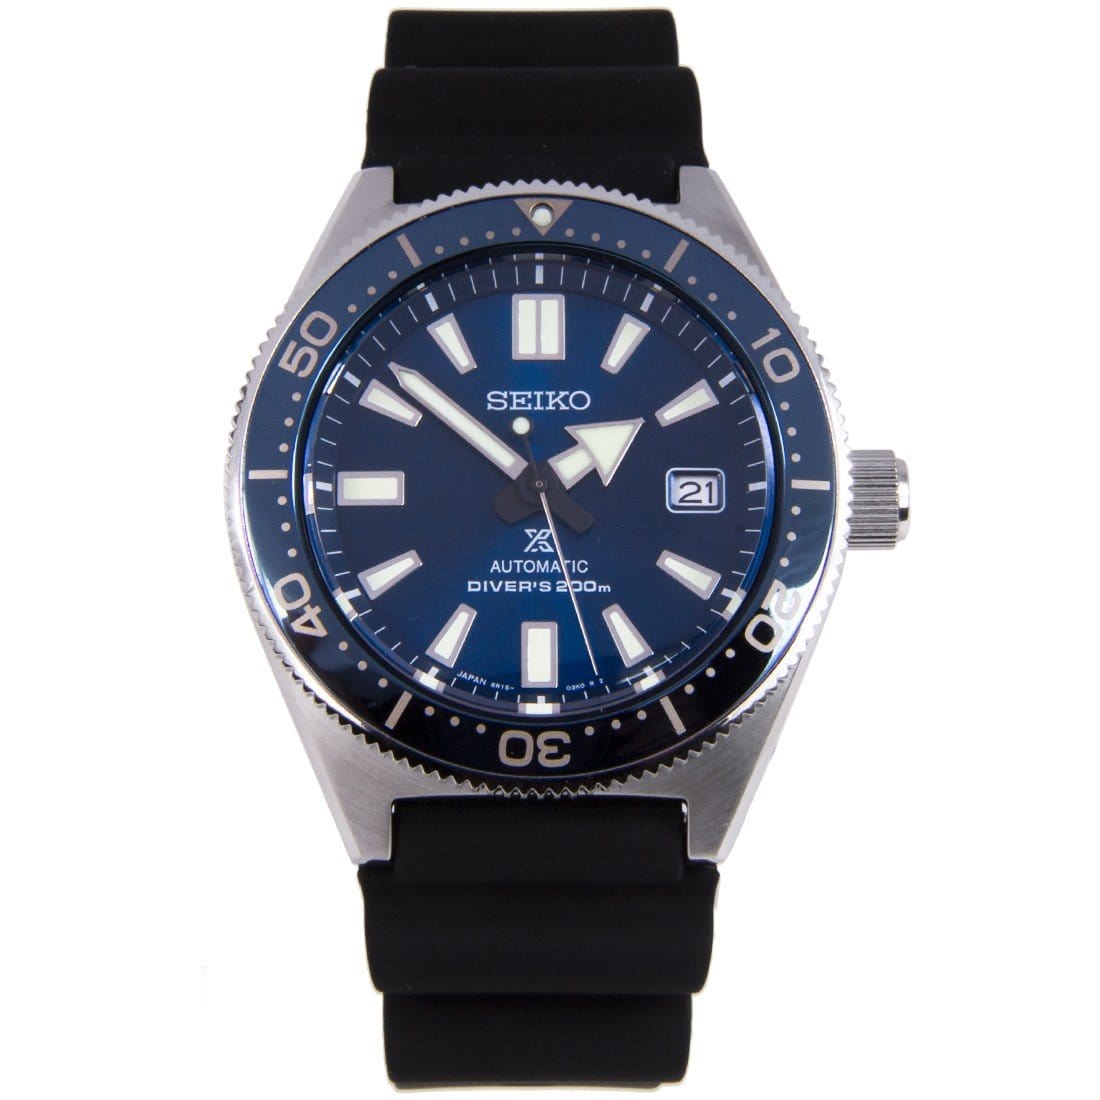 Seiko Prospex SBDC053 SBDC053J1 Dive Watch Japan Made